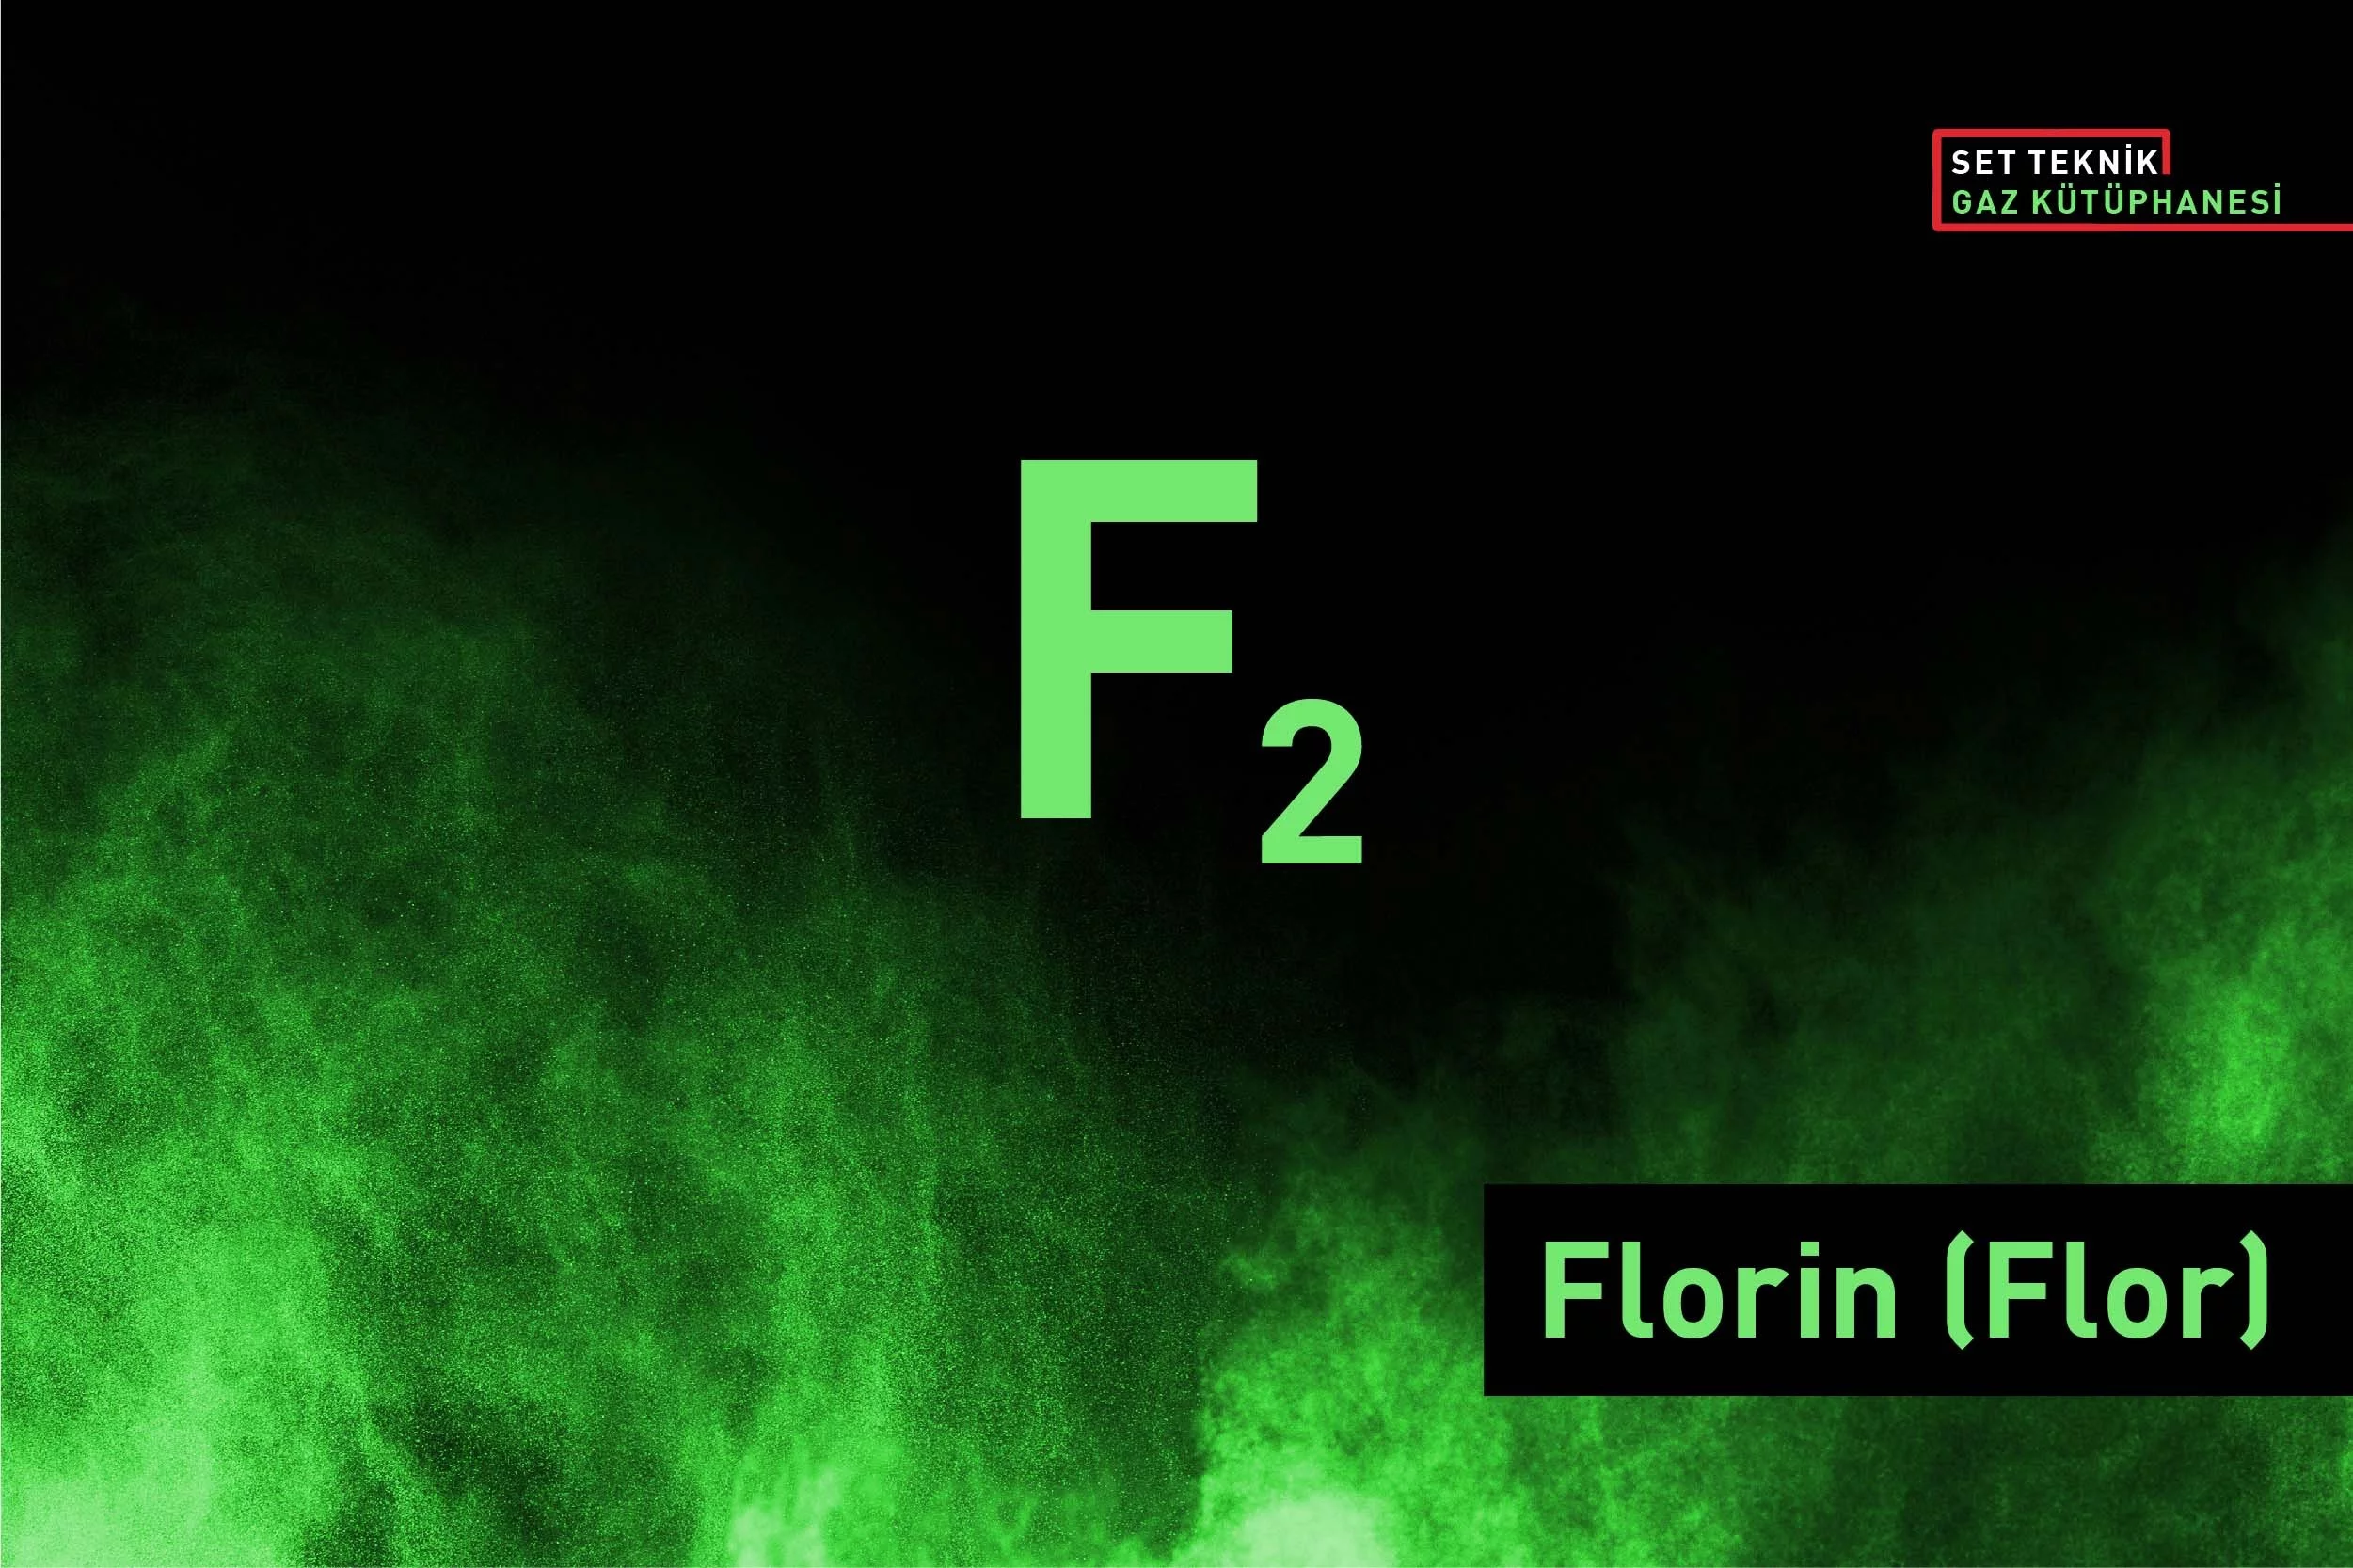 Florin (Flor) (F2) Gazının Özellikleri Nelerdir ve Nasıl Tespit Edilir?